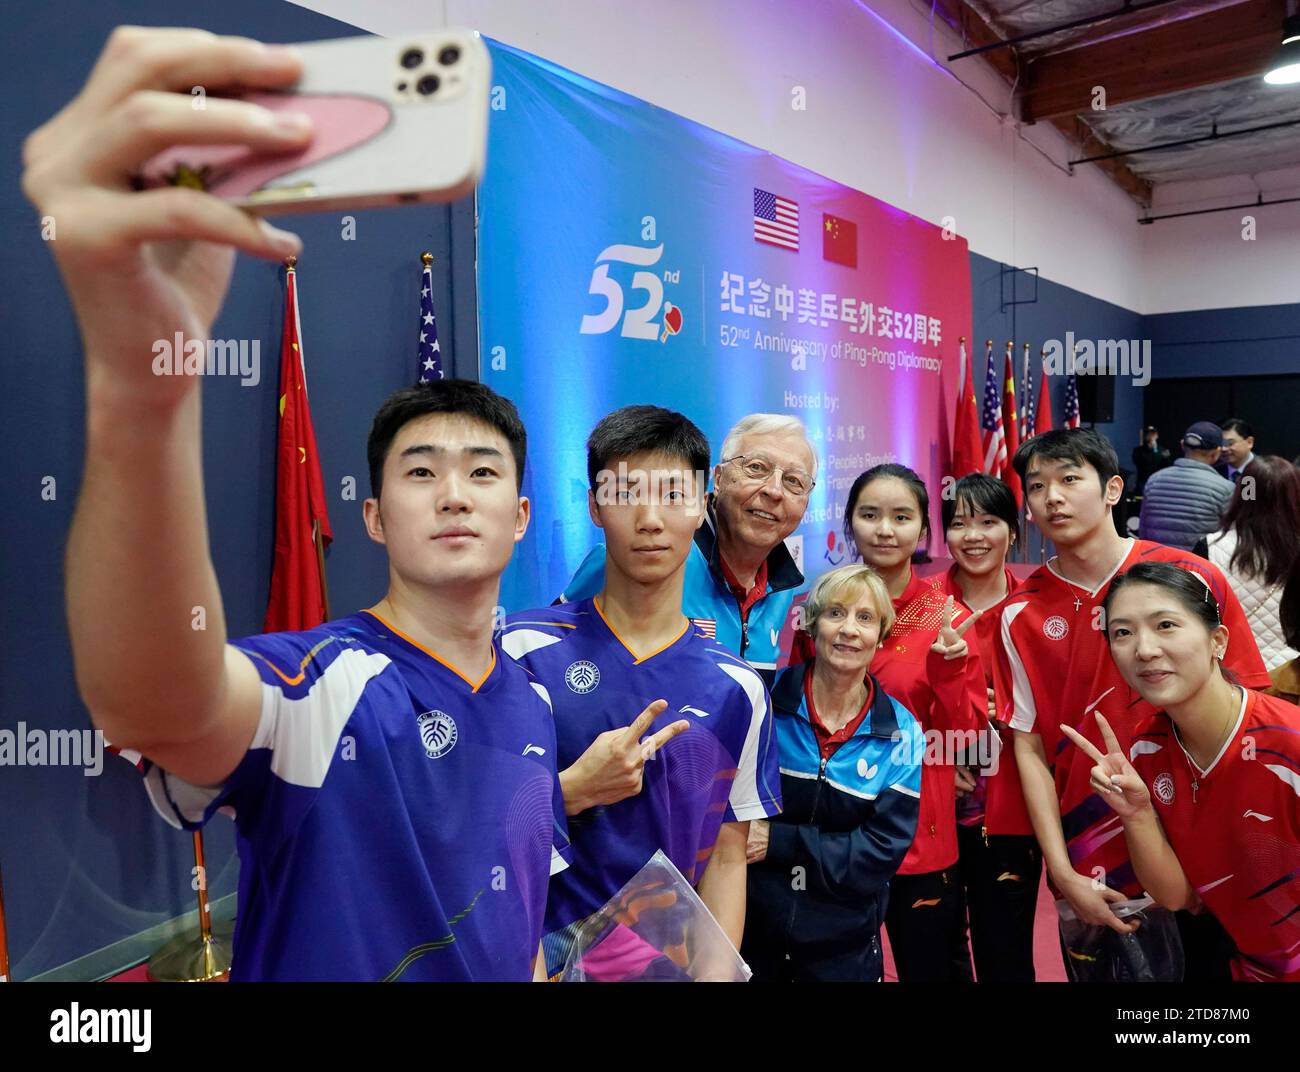 (231217) -- WASHINGTON, 17. Dezember 2023 (Xinhua) -- Teilnehmer aus China und den Vereinigten Staaten machen Selfies während einer Veranstaltung zum 52. Jahrestag der Ping-Pong-Diplomatie in Fremont, Kalifornien, USA, 15. Dezember 2023. Am 13. Dezember fand eine Veranstaltung der chinesischen Botschaft in den Vereinigten Staaten zum 52. Jahrestag der Ping-Pong-Diplomatie statt. Bei der Veranstaltung in der Botschaft wurde ein gemischtes Team-Freundschaftsspiel gespielt, um auf die Geschichte zurückzublicken und das Wohlwollen zwischen den Chinesen und den Amerikanern zu erneuern. Am 15. Dezember fand eine weitere Gedenkveranstaltung in Fremont in Califor statt Stockfoto